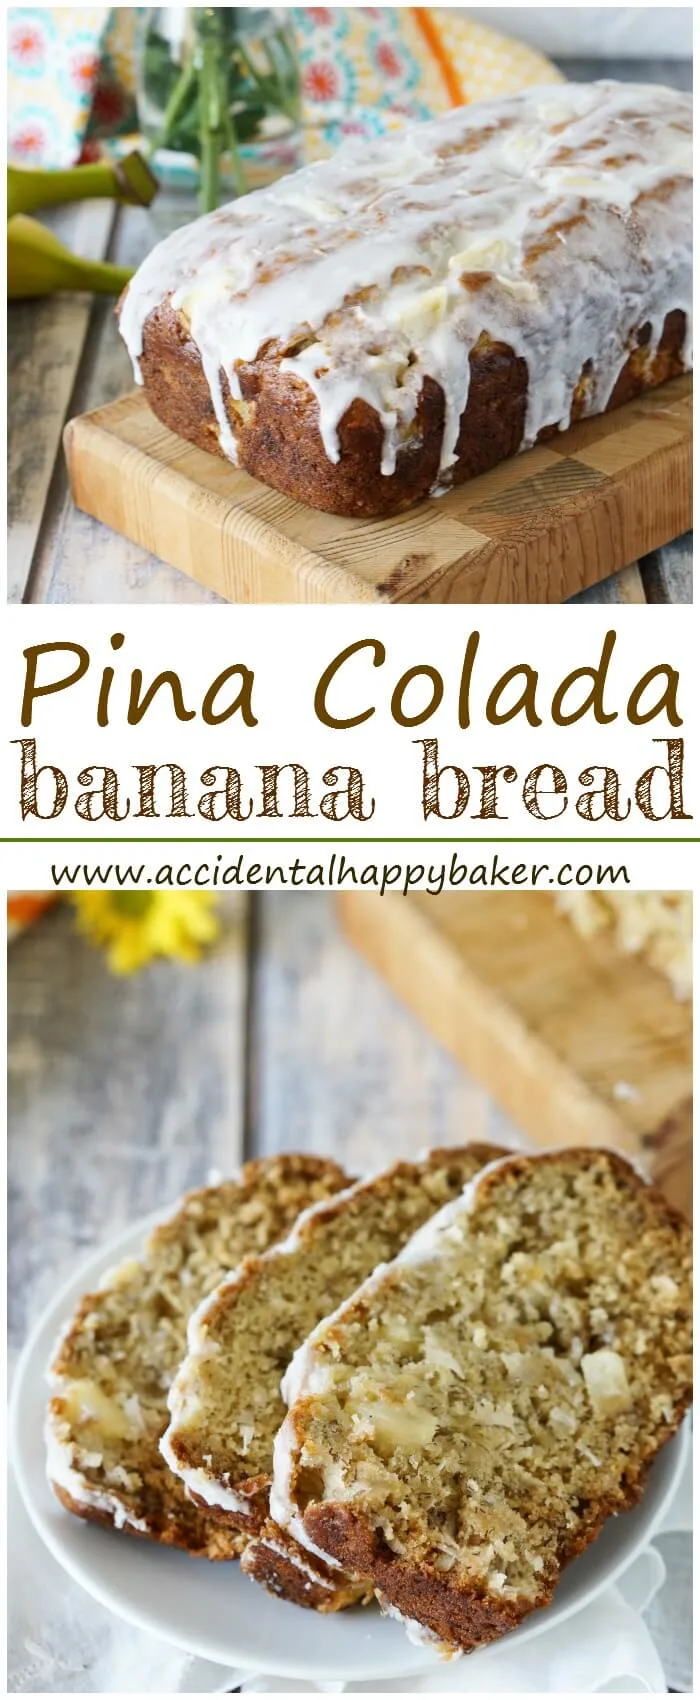 Pina-colada-banana-bread-pin